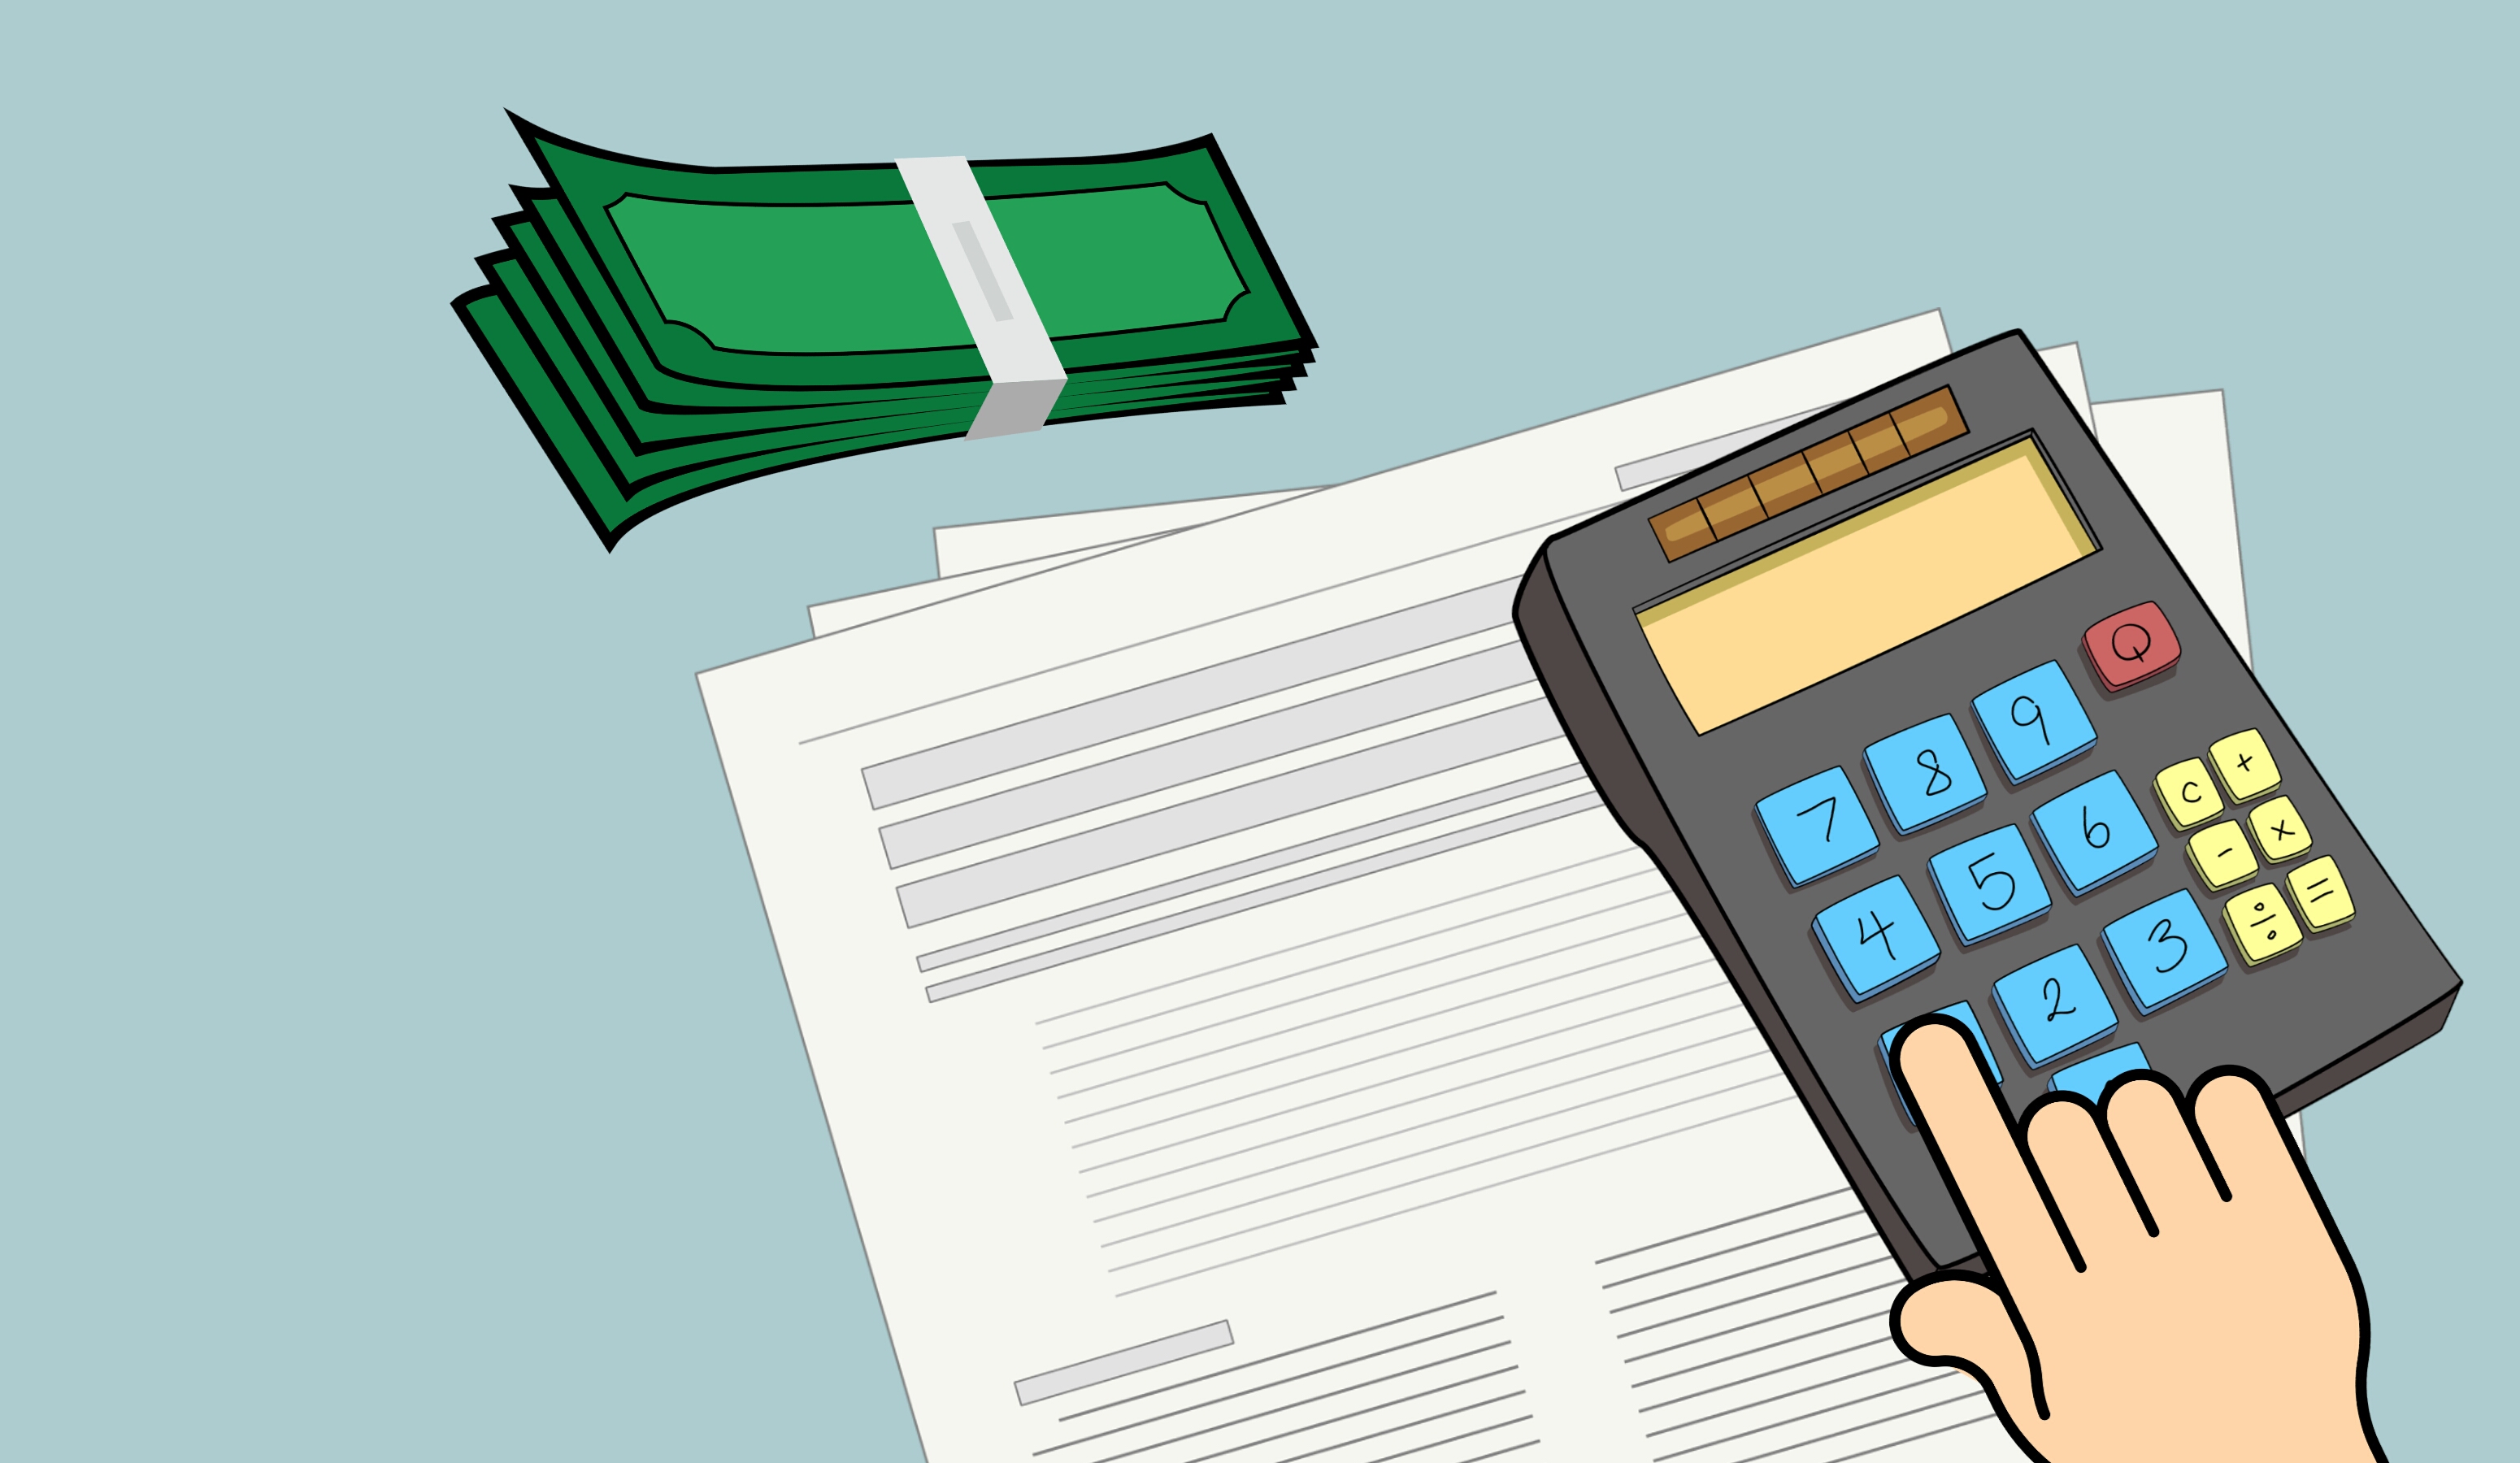 La imagen muestra una calculadora, dinero y una hoja de papel para realizar un presupuesto